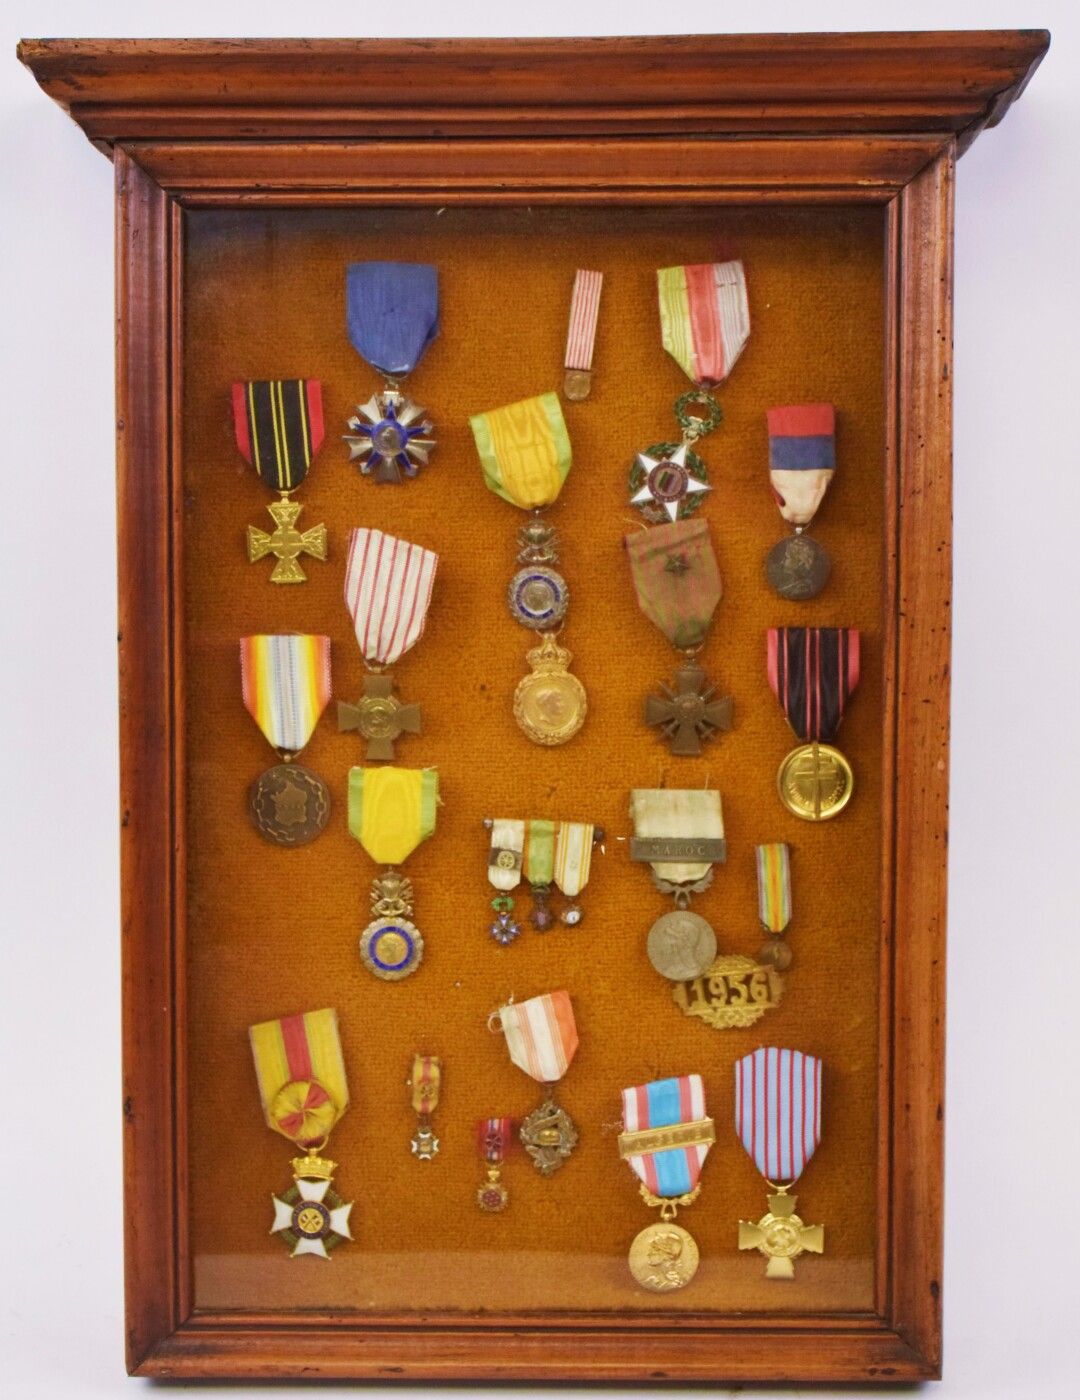 Null [MILITAR]

Enmarcado con 16 medallas que incluyen: 

- Cruz del combatiente&hellip;